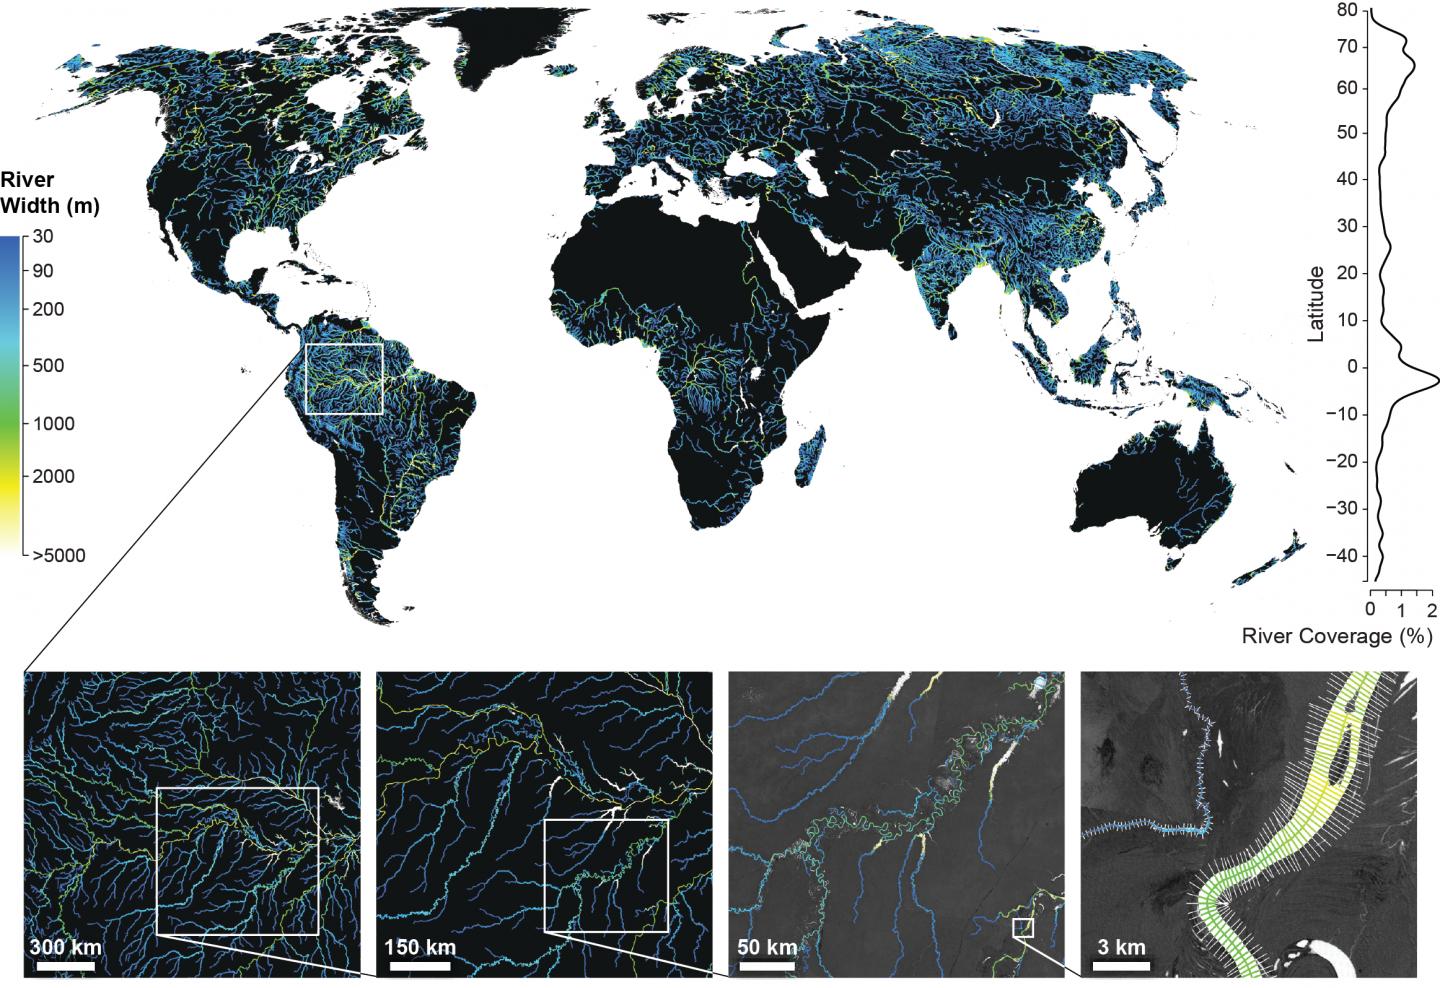 Global River Widths from Landsat Map